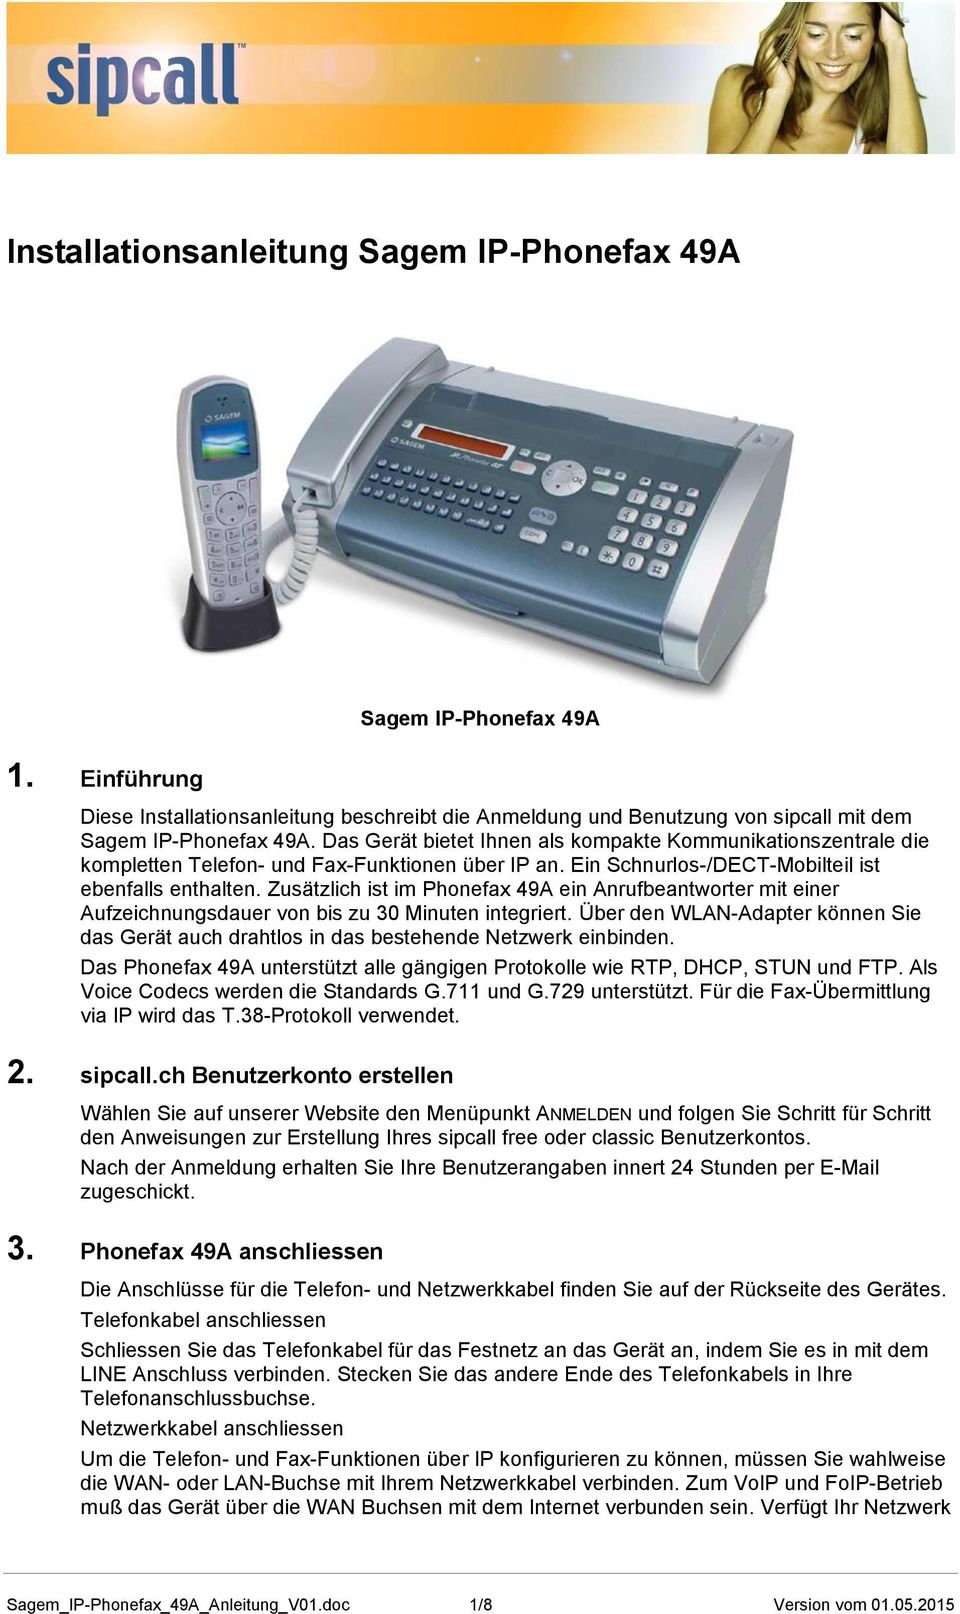 Zusätzlich ist im Phonefax 49A ein Anrufbeantworter mit einer Aufzeichnungsdauer von bis zu 30 Minuten integriert.